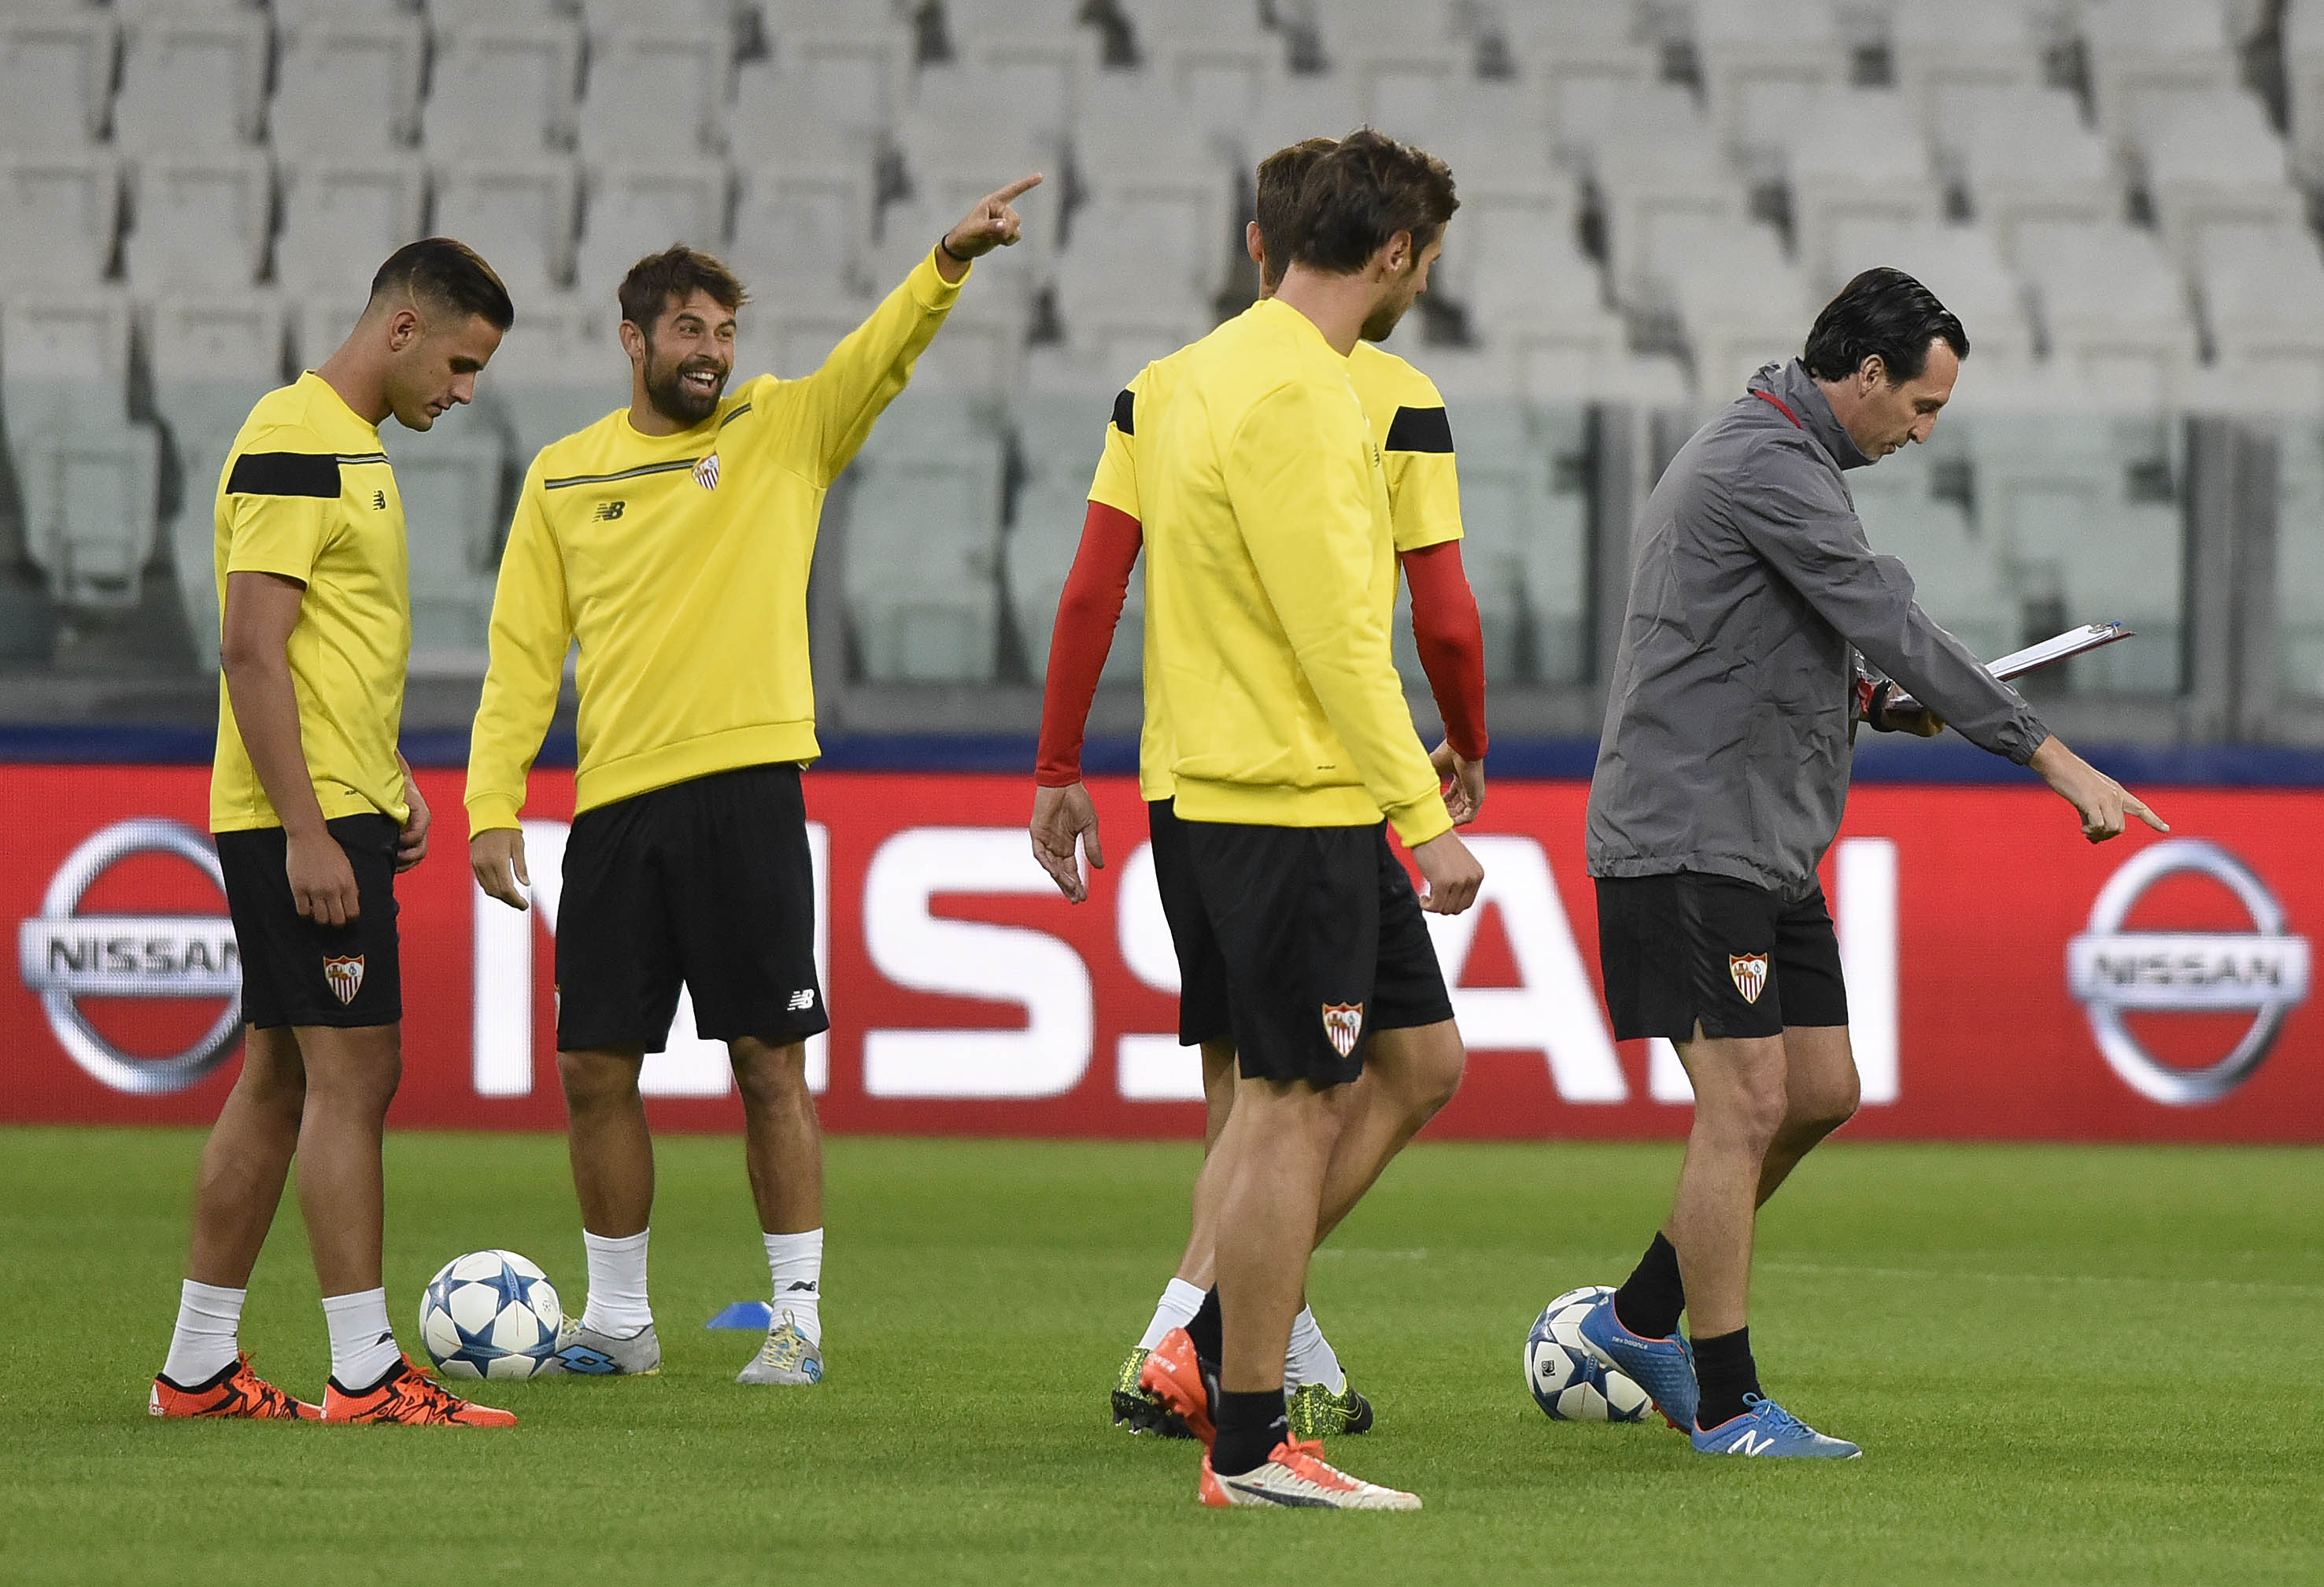 Jugadores del Sevilla FC entrenan en el Juventus Stadium